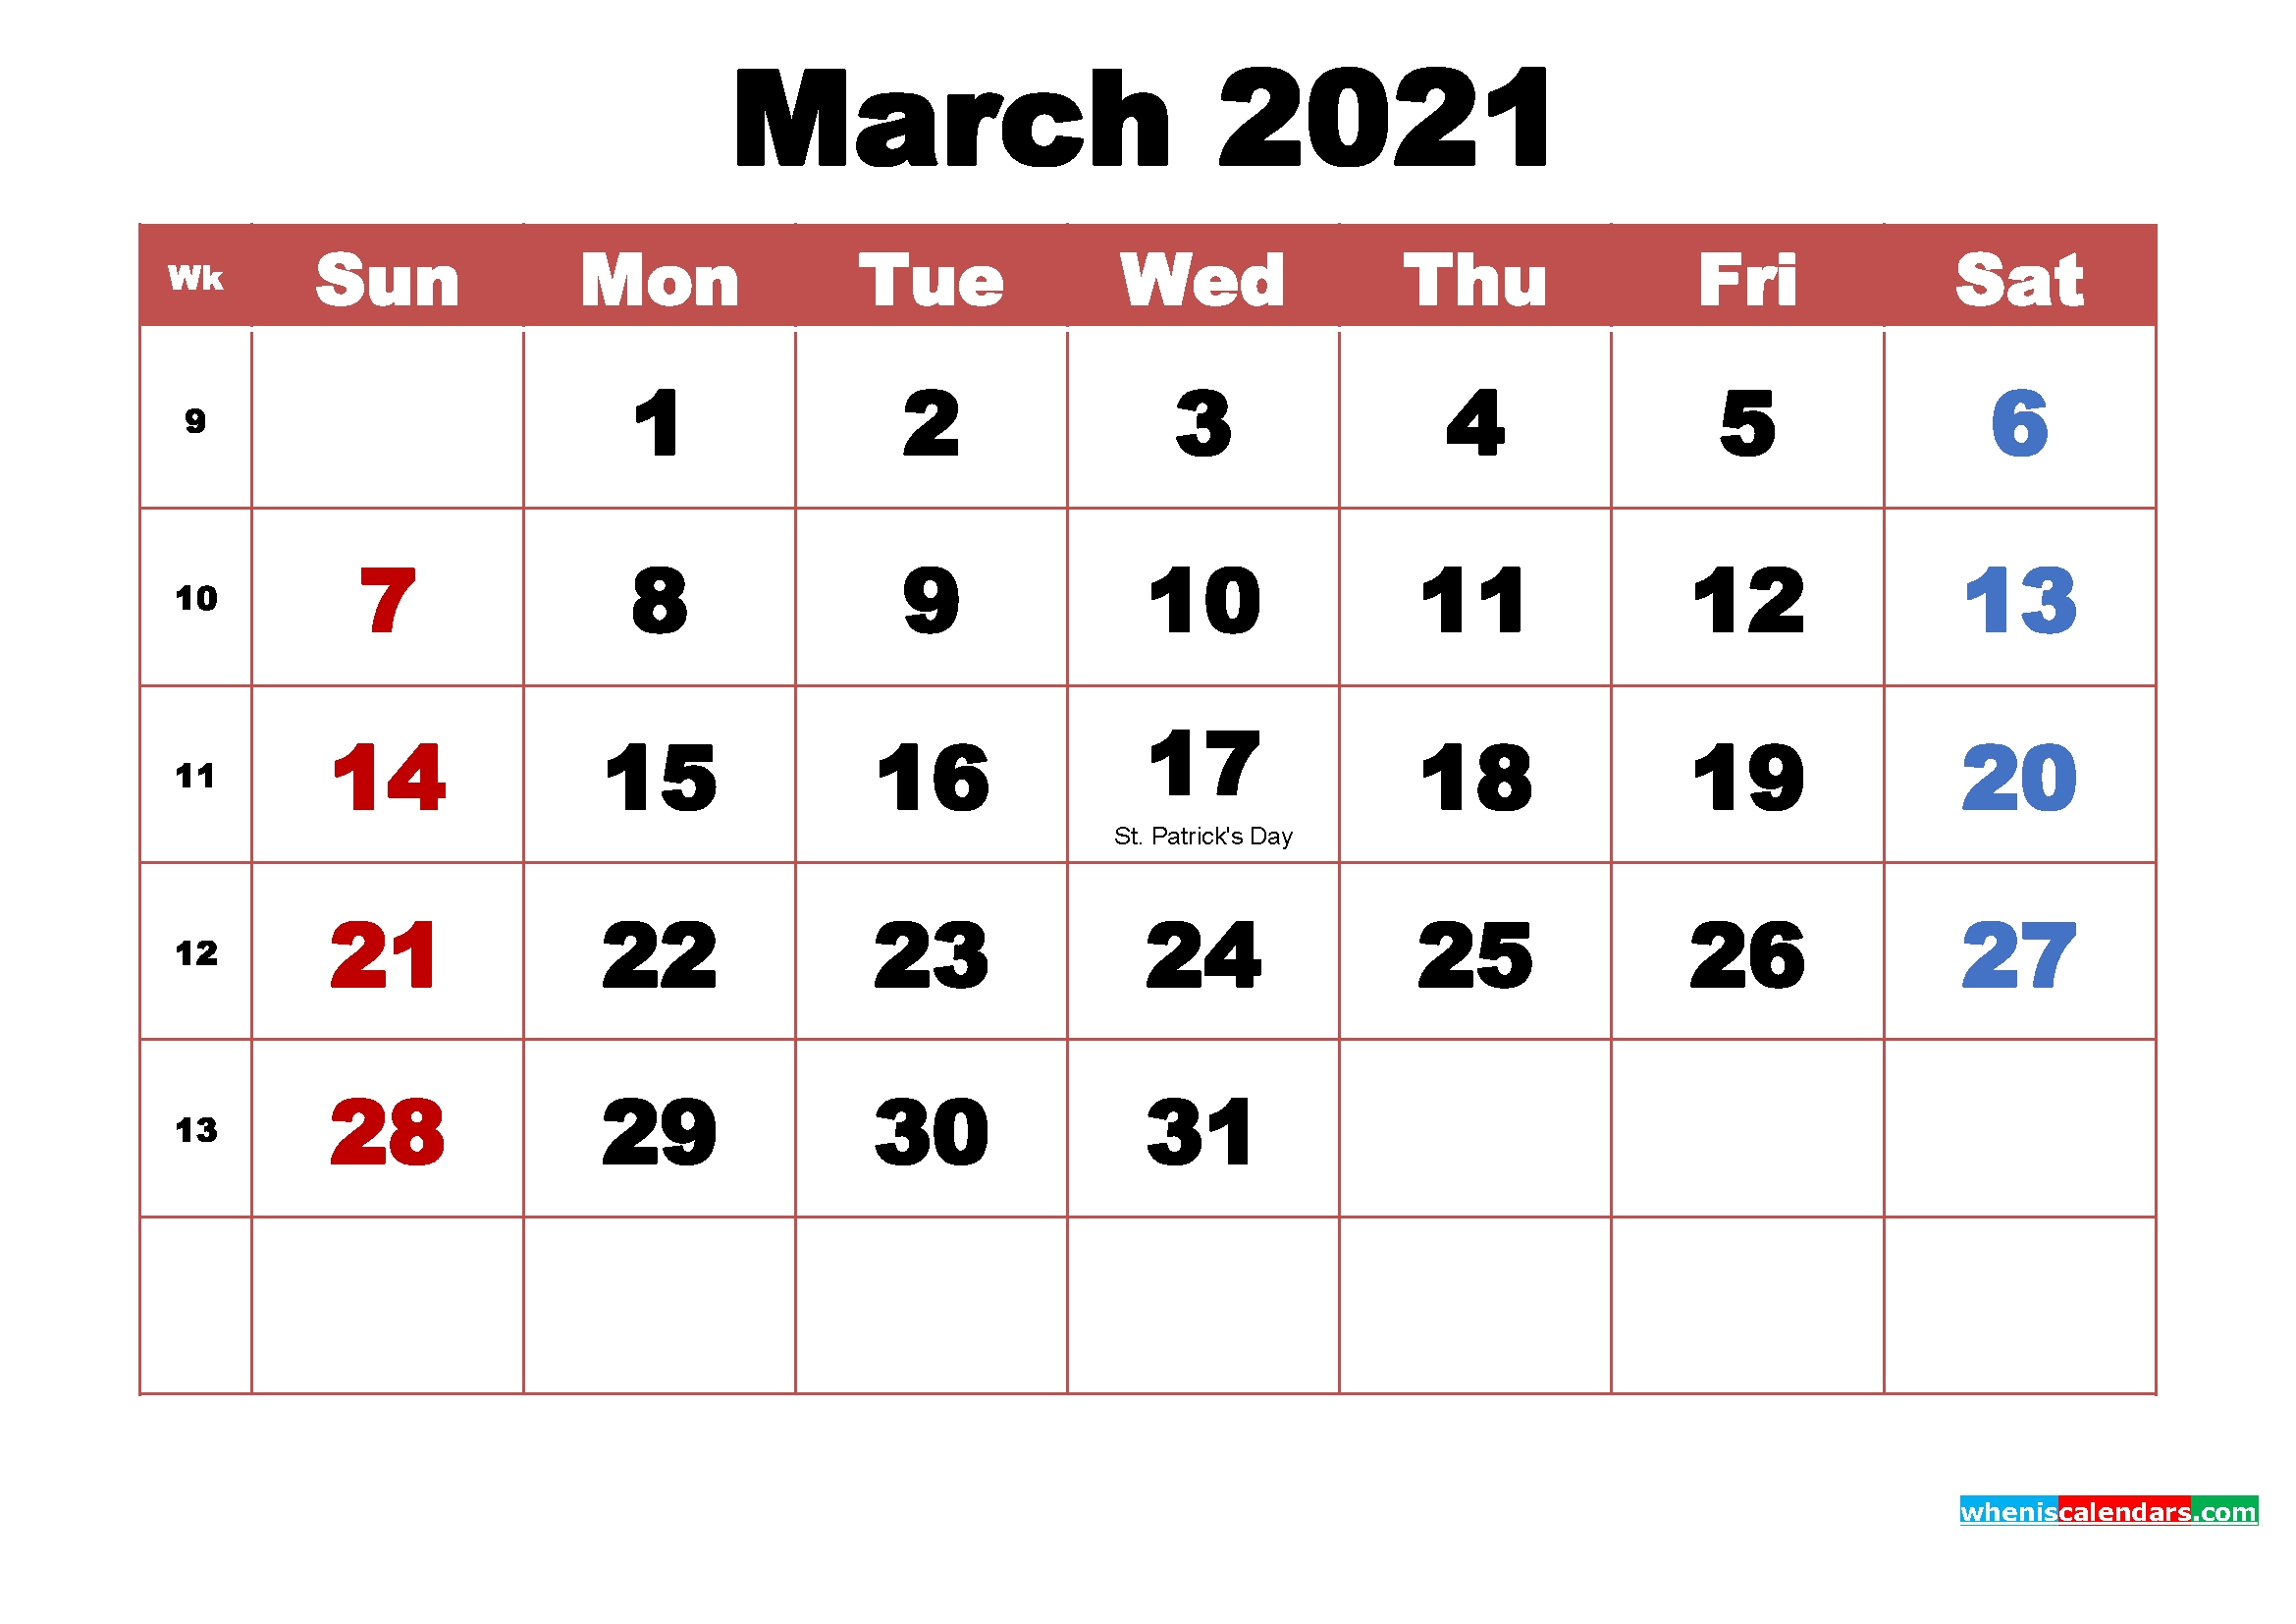 Take Calendar April 2021 March 2021